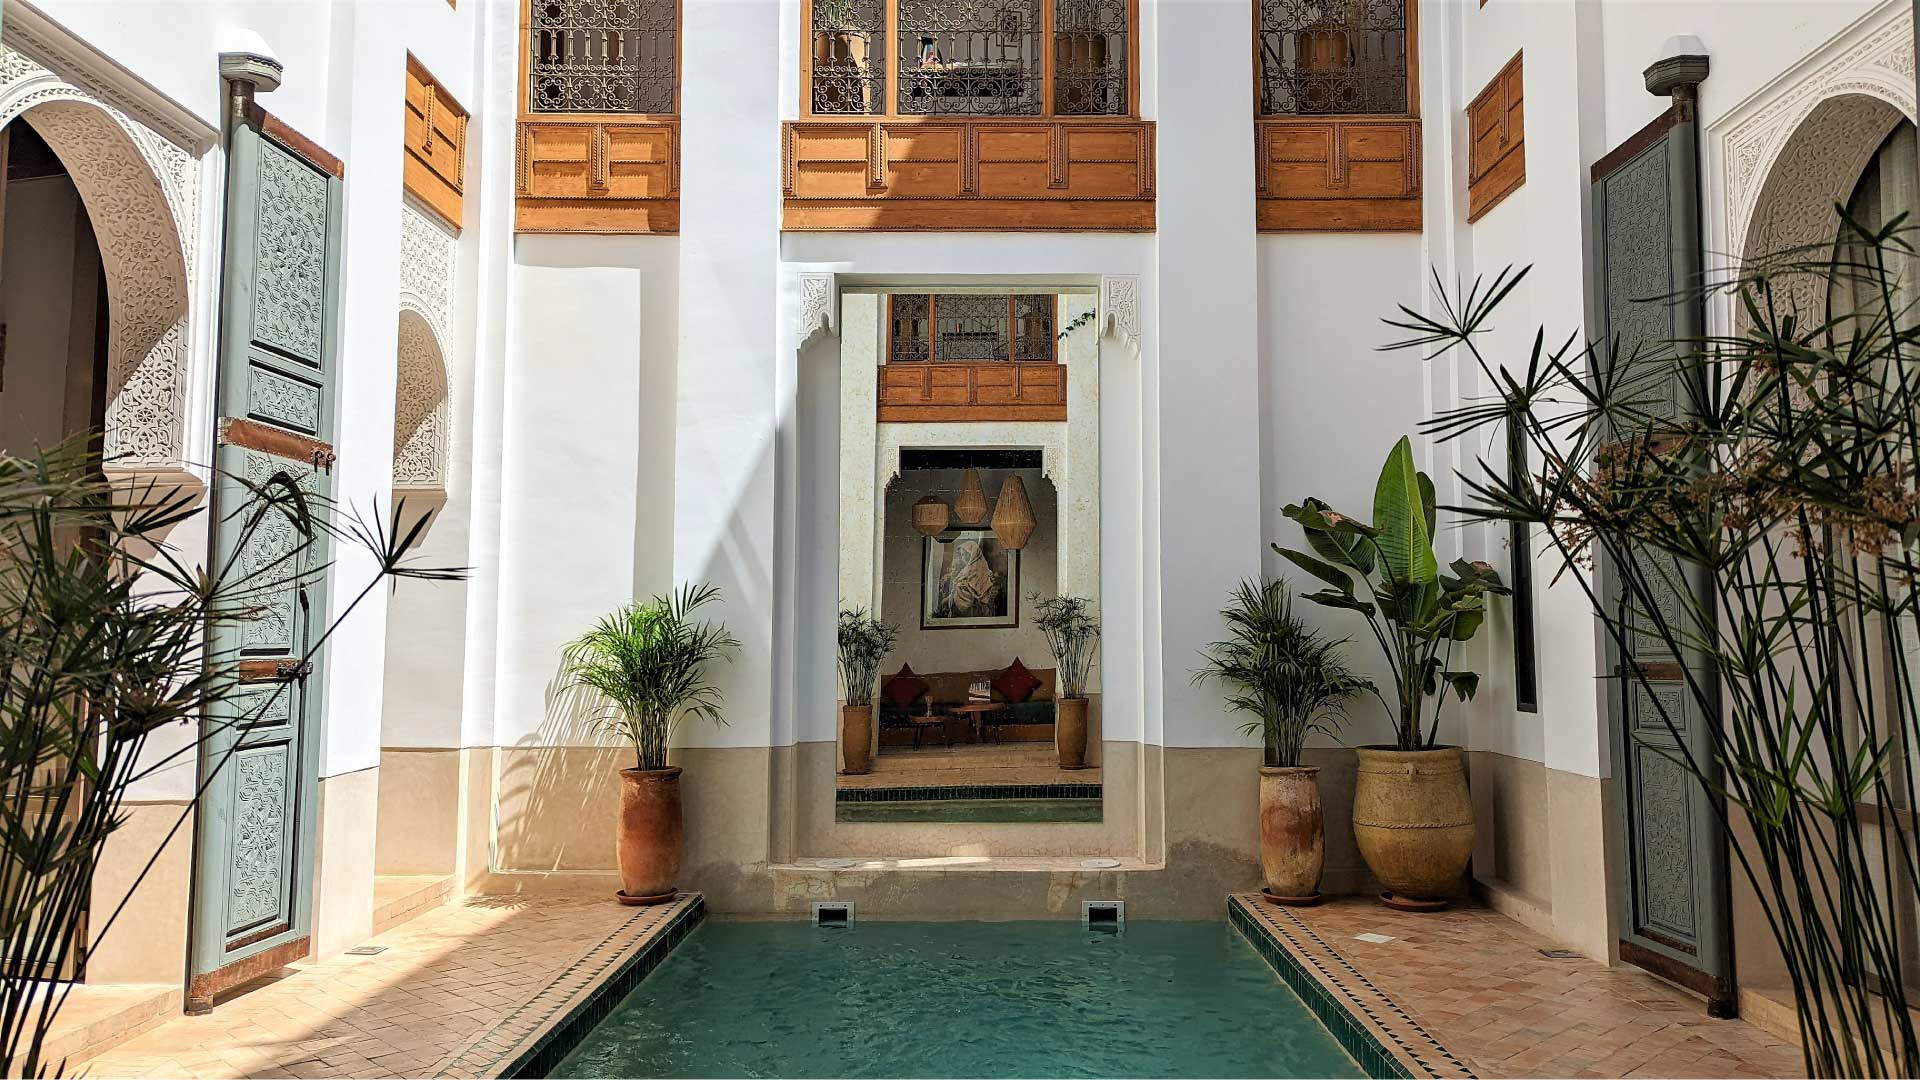 JARDIN DES SENS, Riad, Maison hôtes, hôtel, spa, Marrakech, piscine, plante